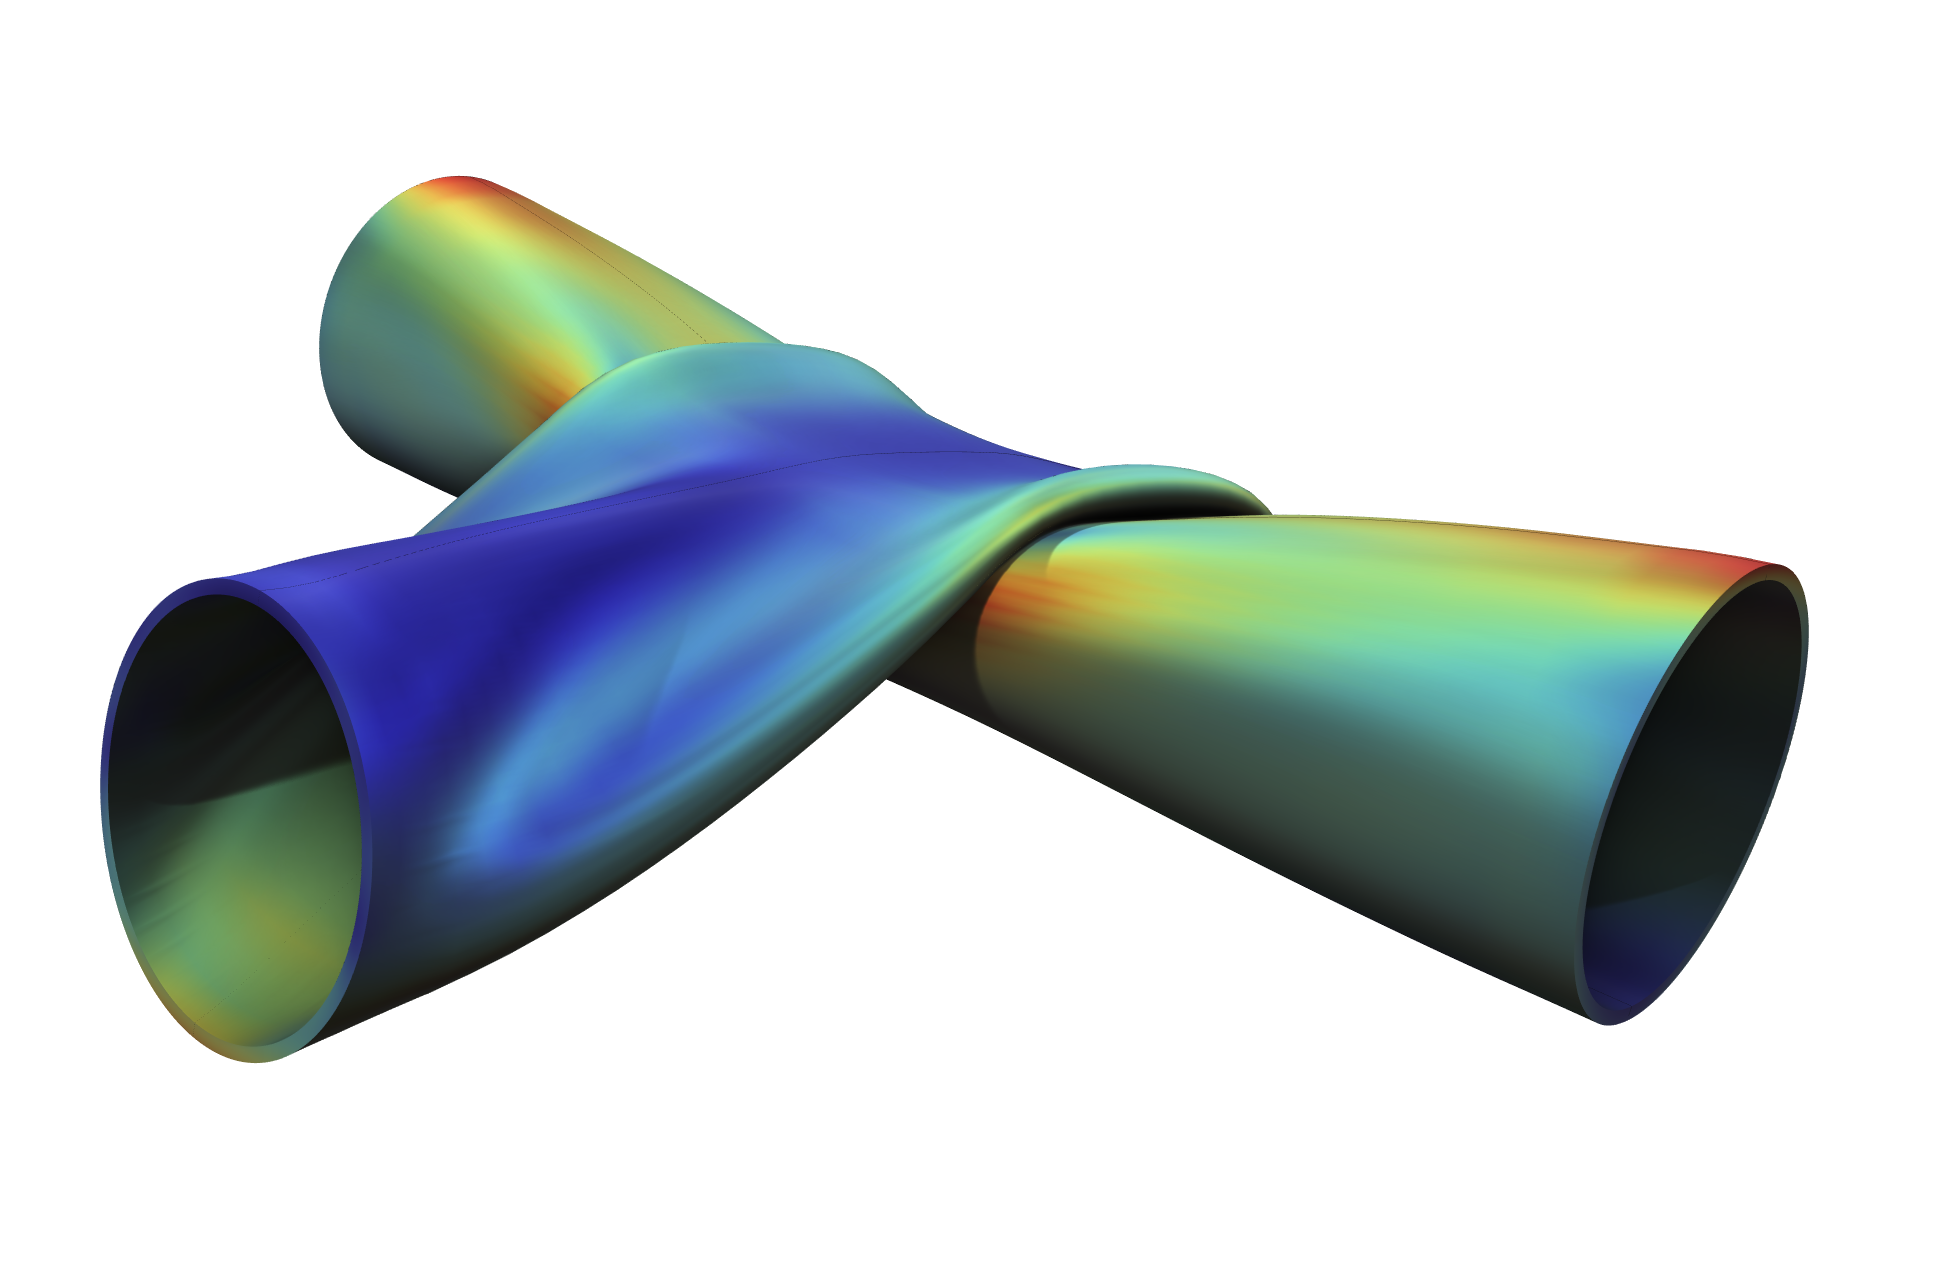 Un’analisi strutturale mostra lo stress e la deformazione di due tubi metallici in contatto meccanico.